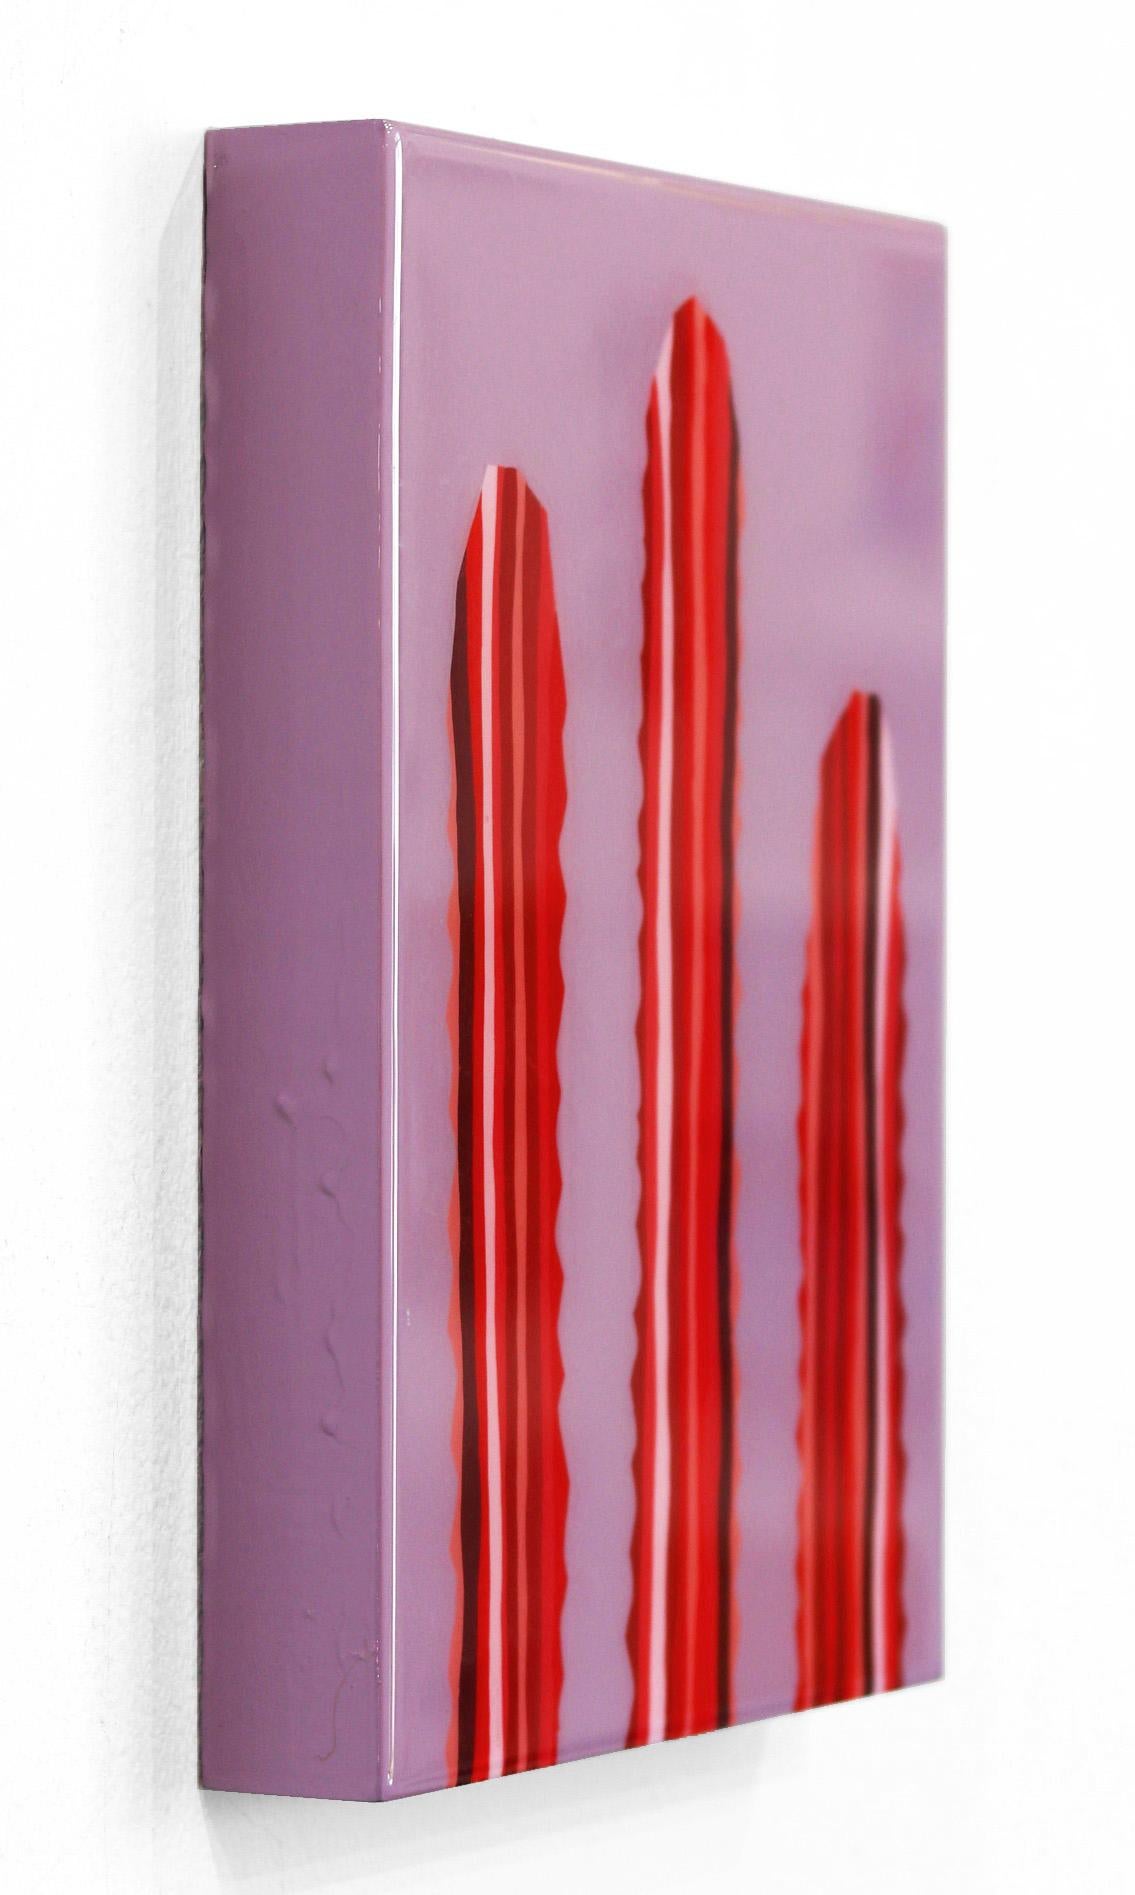 Lavanda - Peinture de cactus d'inspiration Pop Art d'inspiration Sud-Ouest rouge violet vif - Violet Landscape Painting par Will Beger